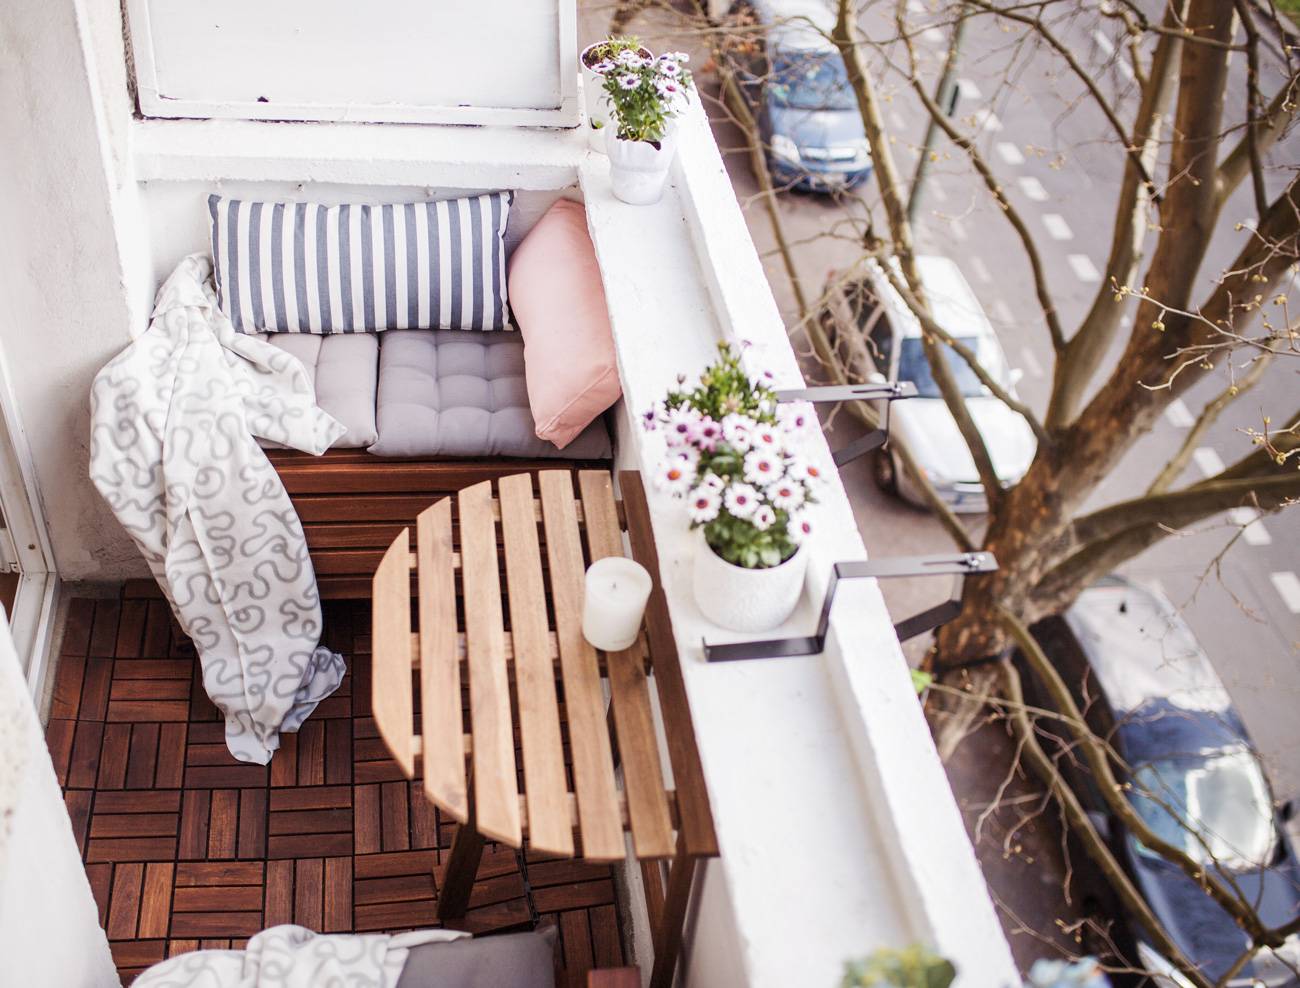 Балкон в стиле прованс - атмосфера уюта и отдыха